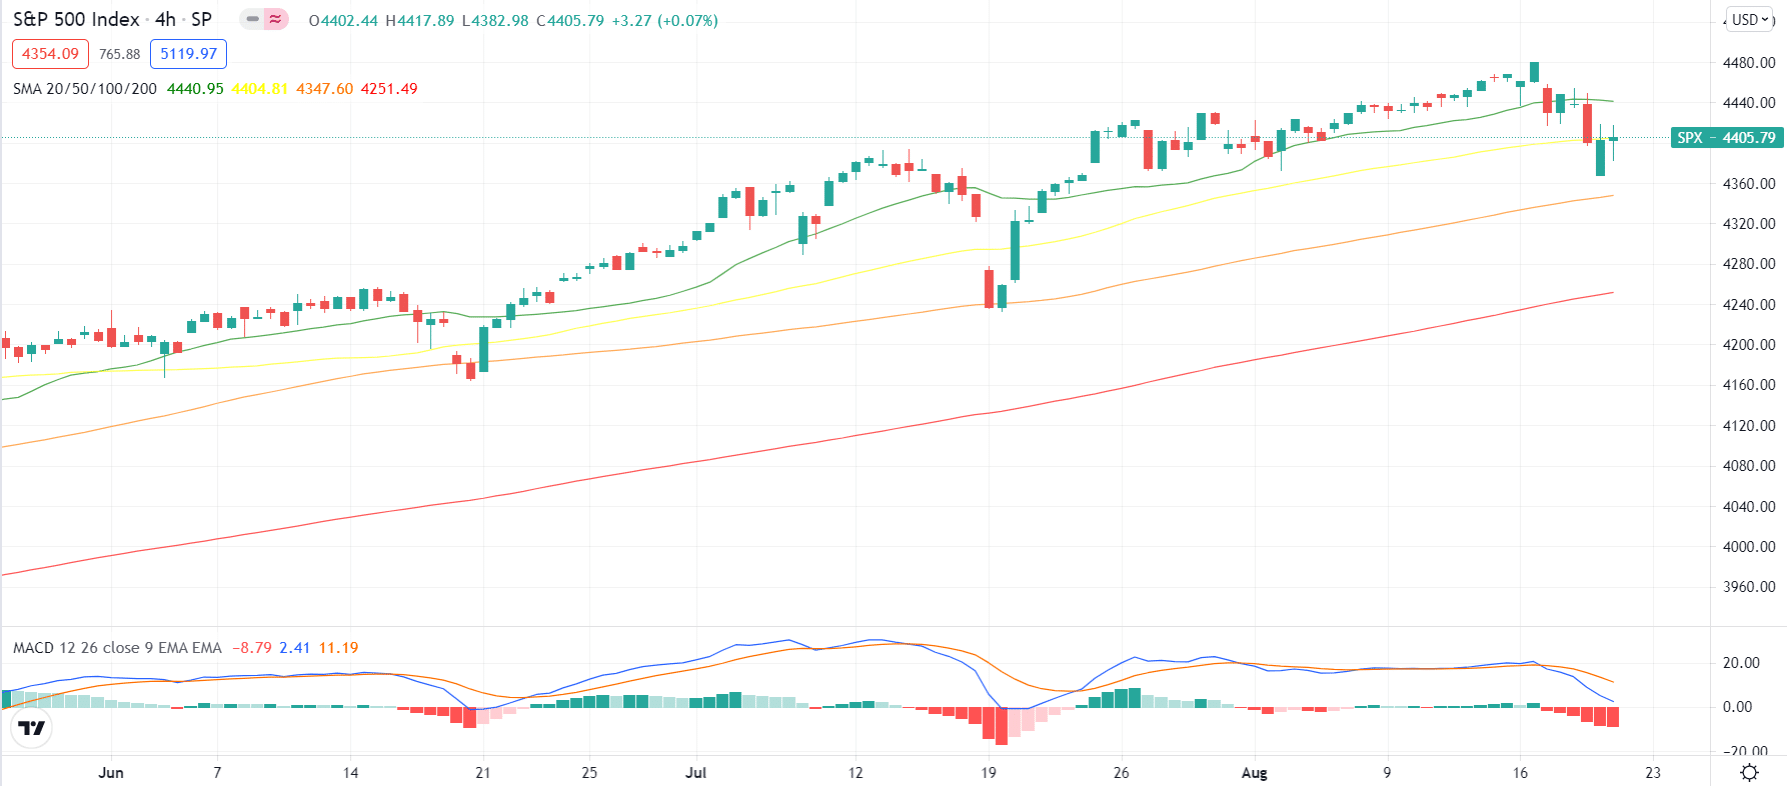 S&P 500 4-hour price chart analysis